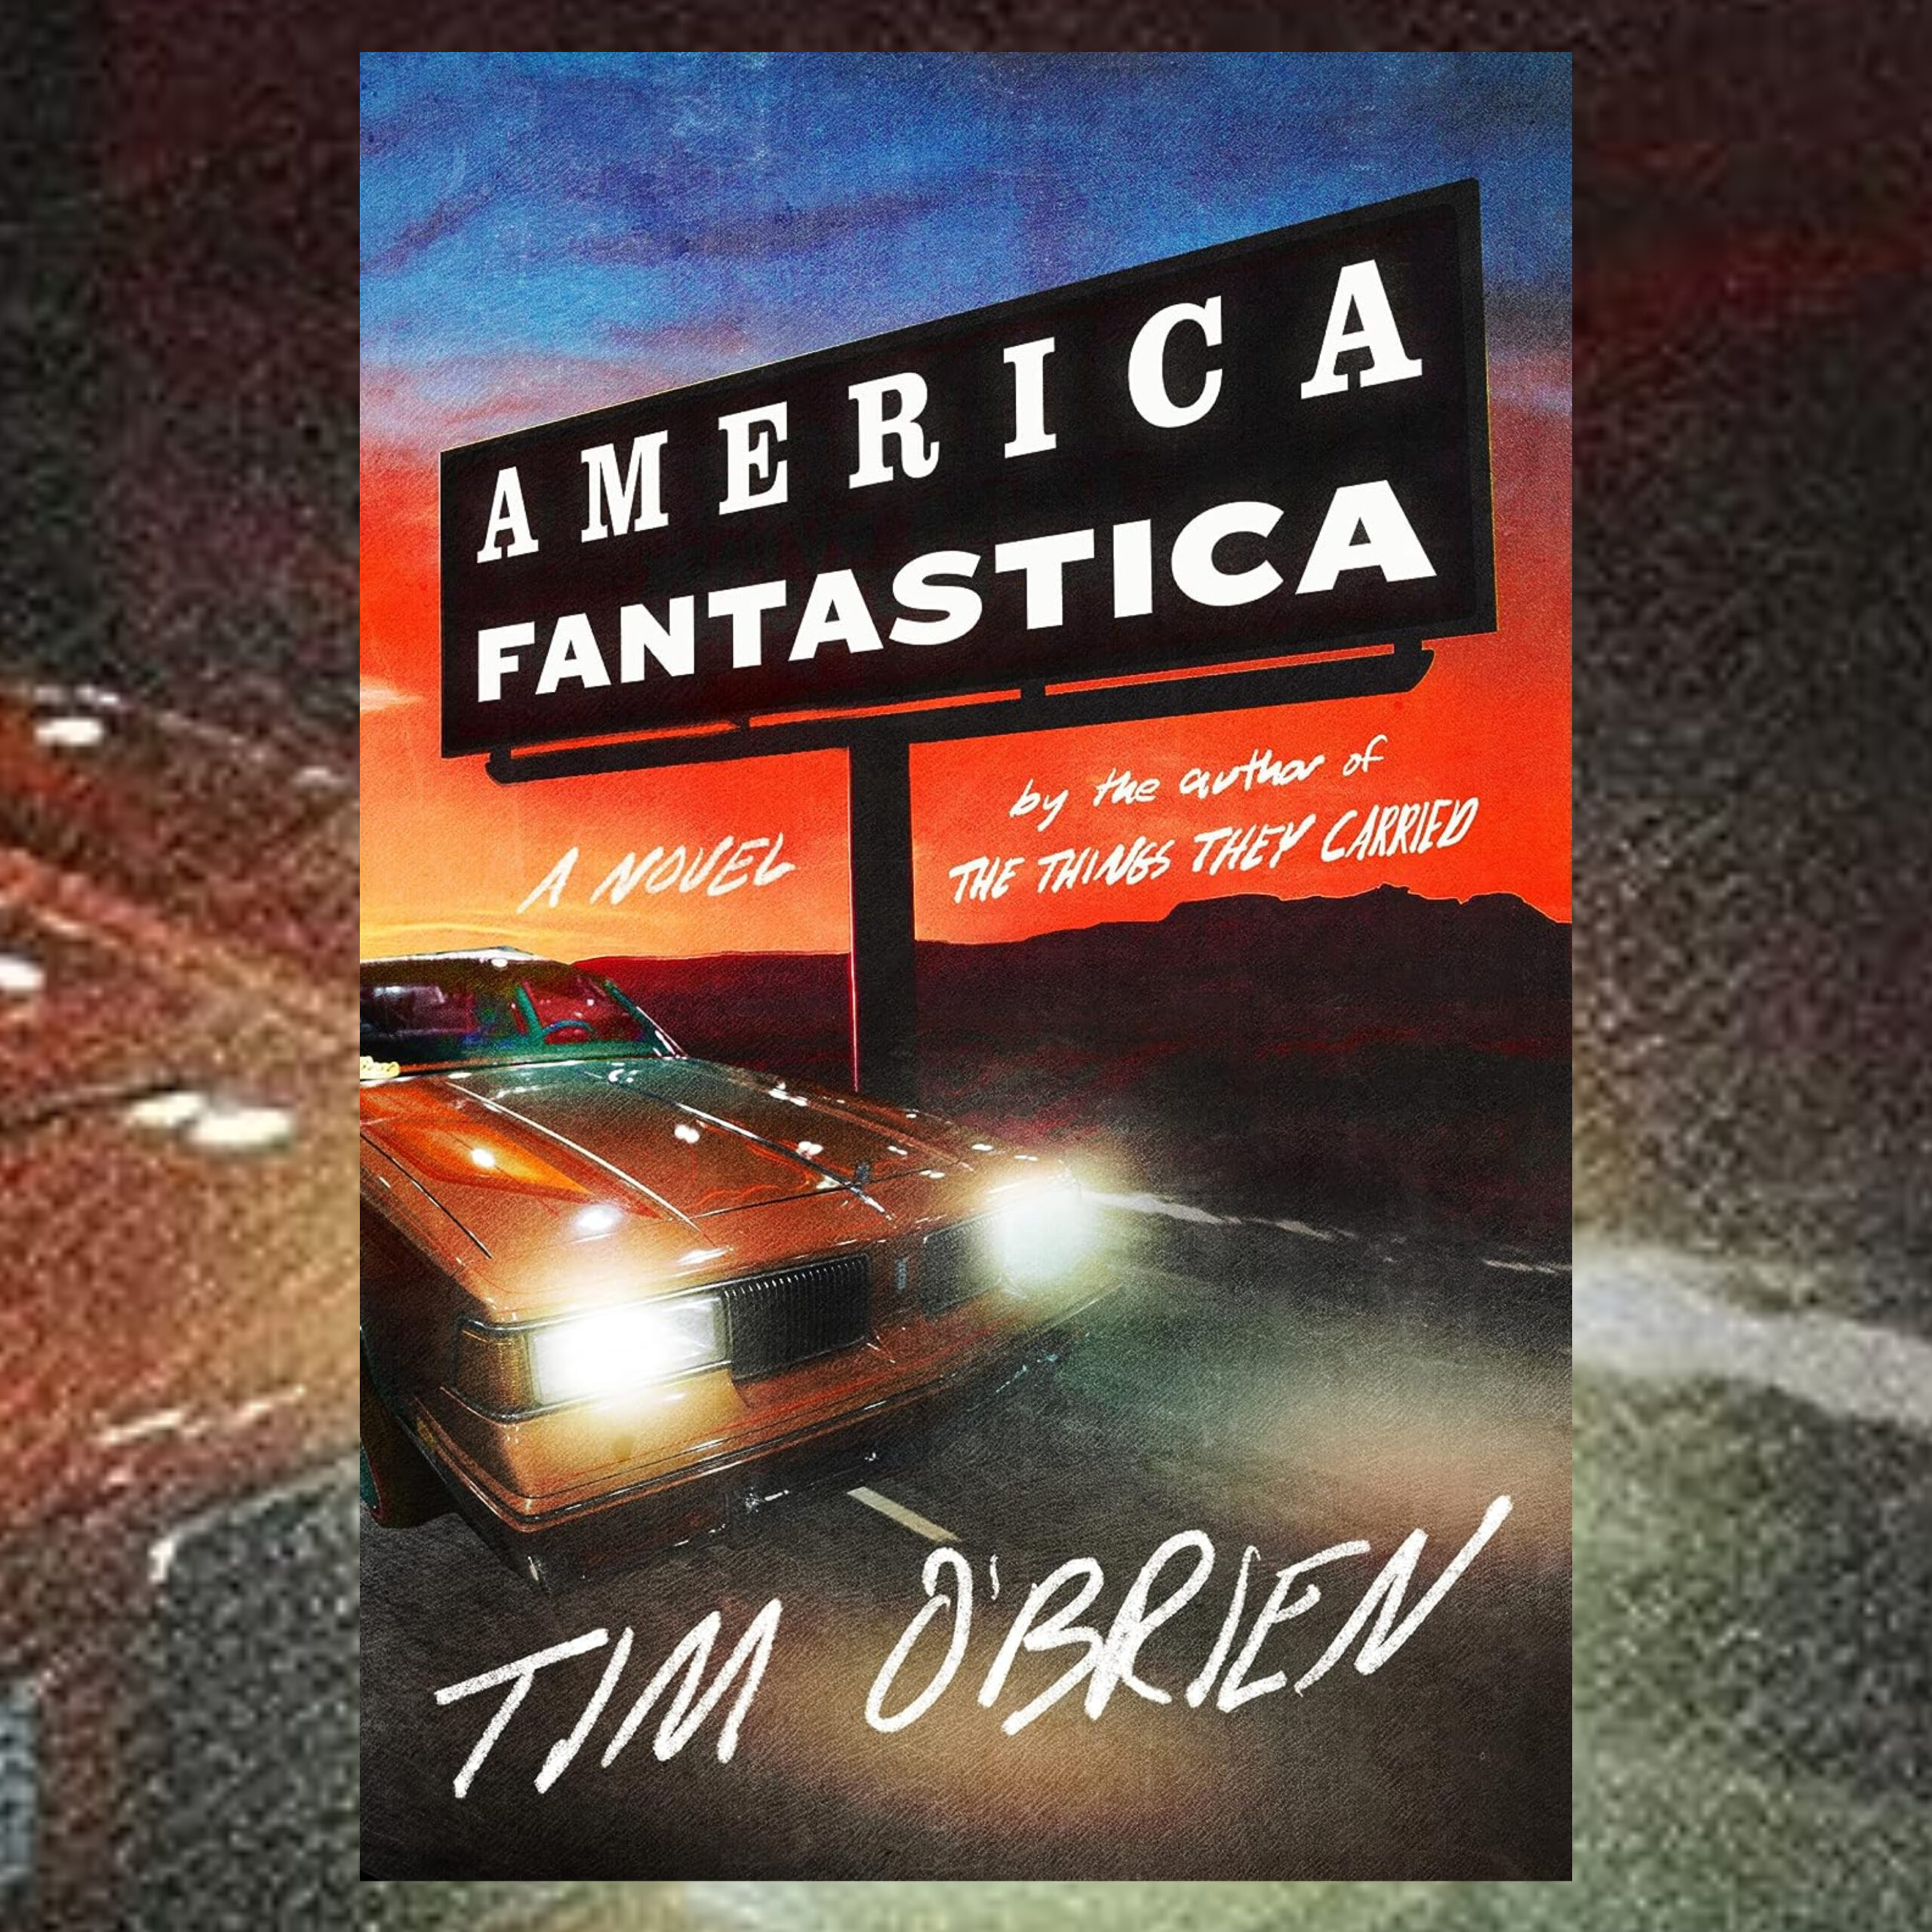 The Book Show | Tim O'Brien - America Fantastica